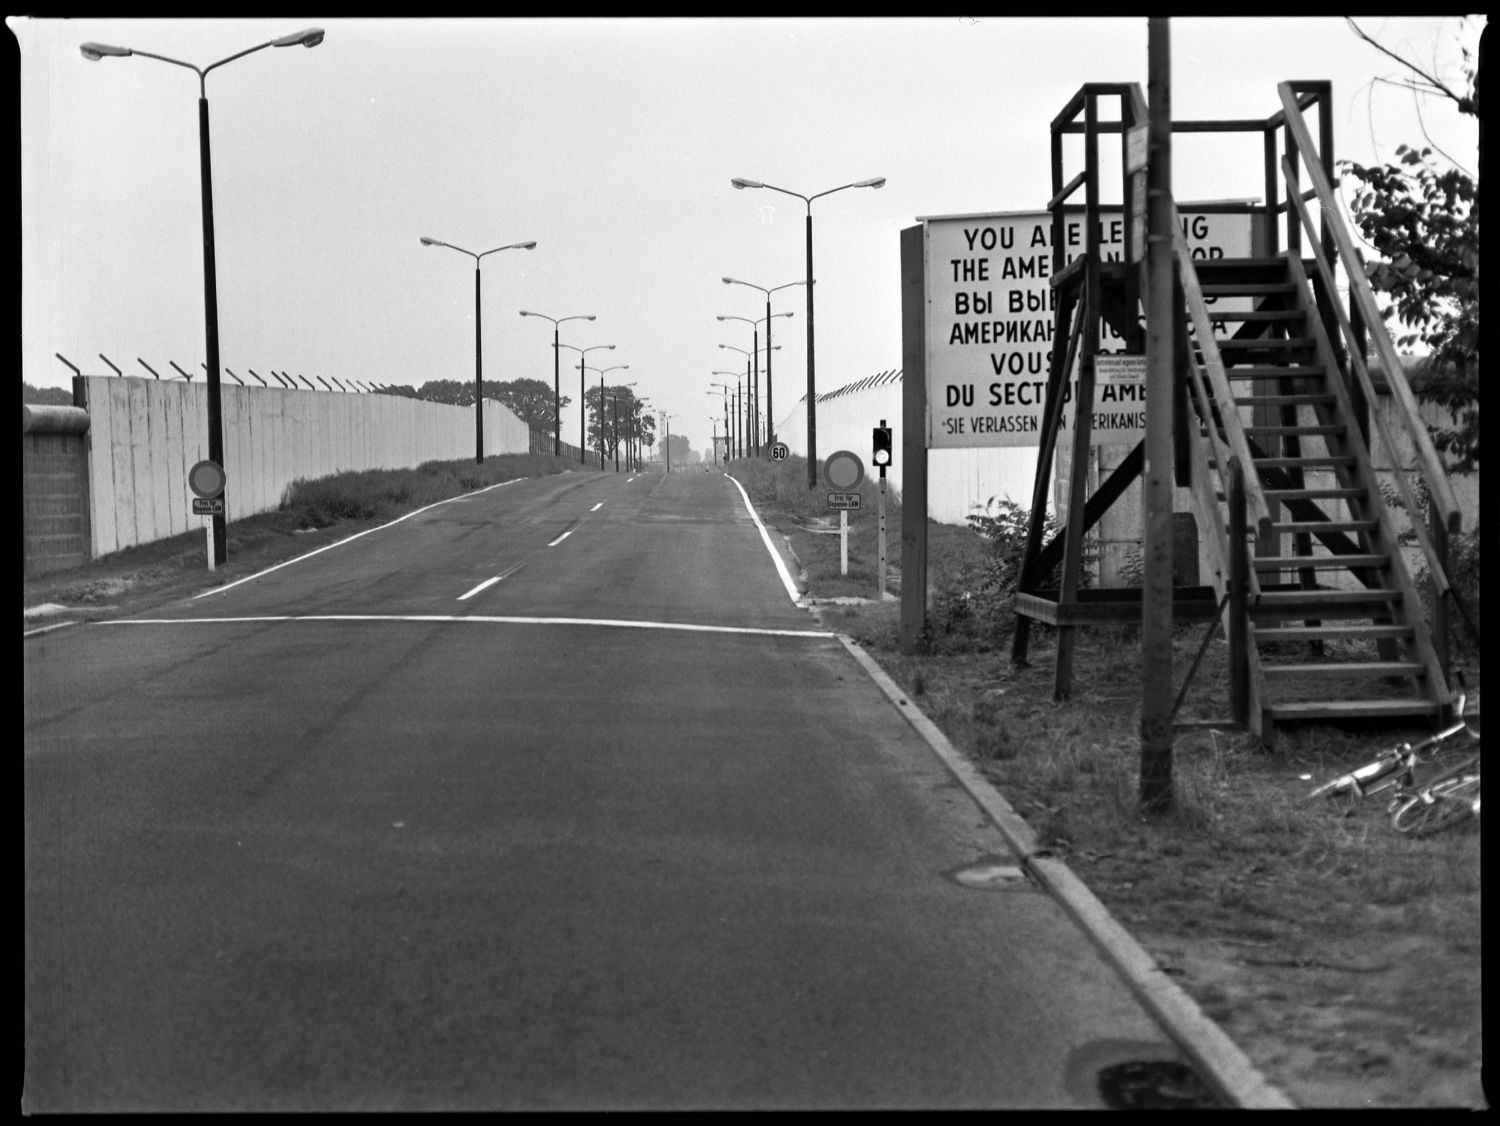 s/w-Fotografie: Berliner Mauer, Sektorengrenze am Kirchhainer Damm zwischen Berlin-Lichtenrade und Mahlow (AlliiertenMuseum/U.S. Army Photograph Public Domain Mark)